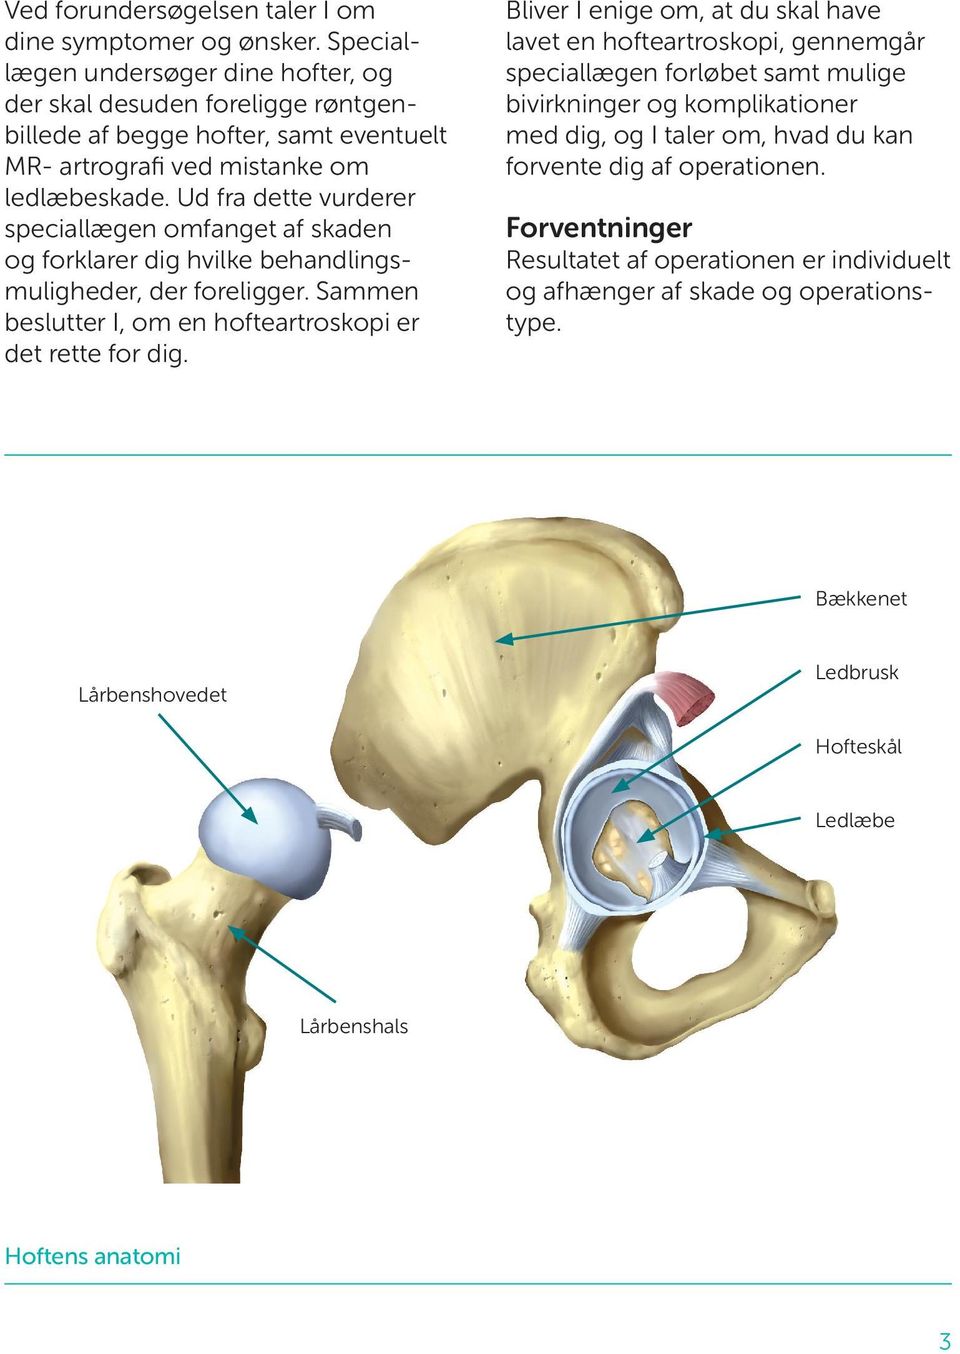 Patientvejledning. Hofteartroskopi. Kikkertoperation af hofteled - PDF Free  Download